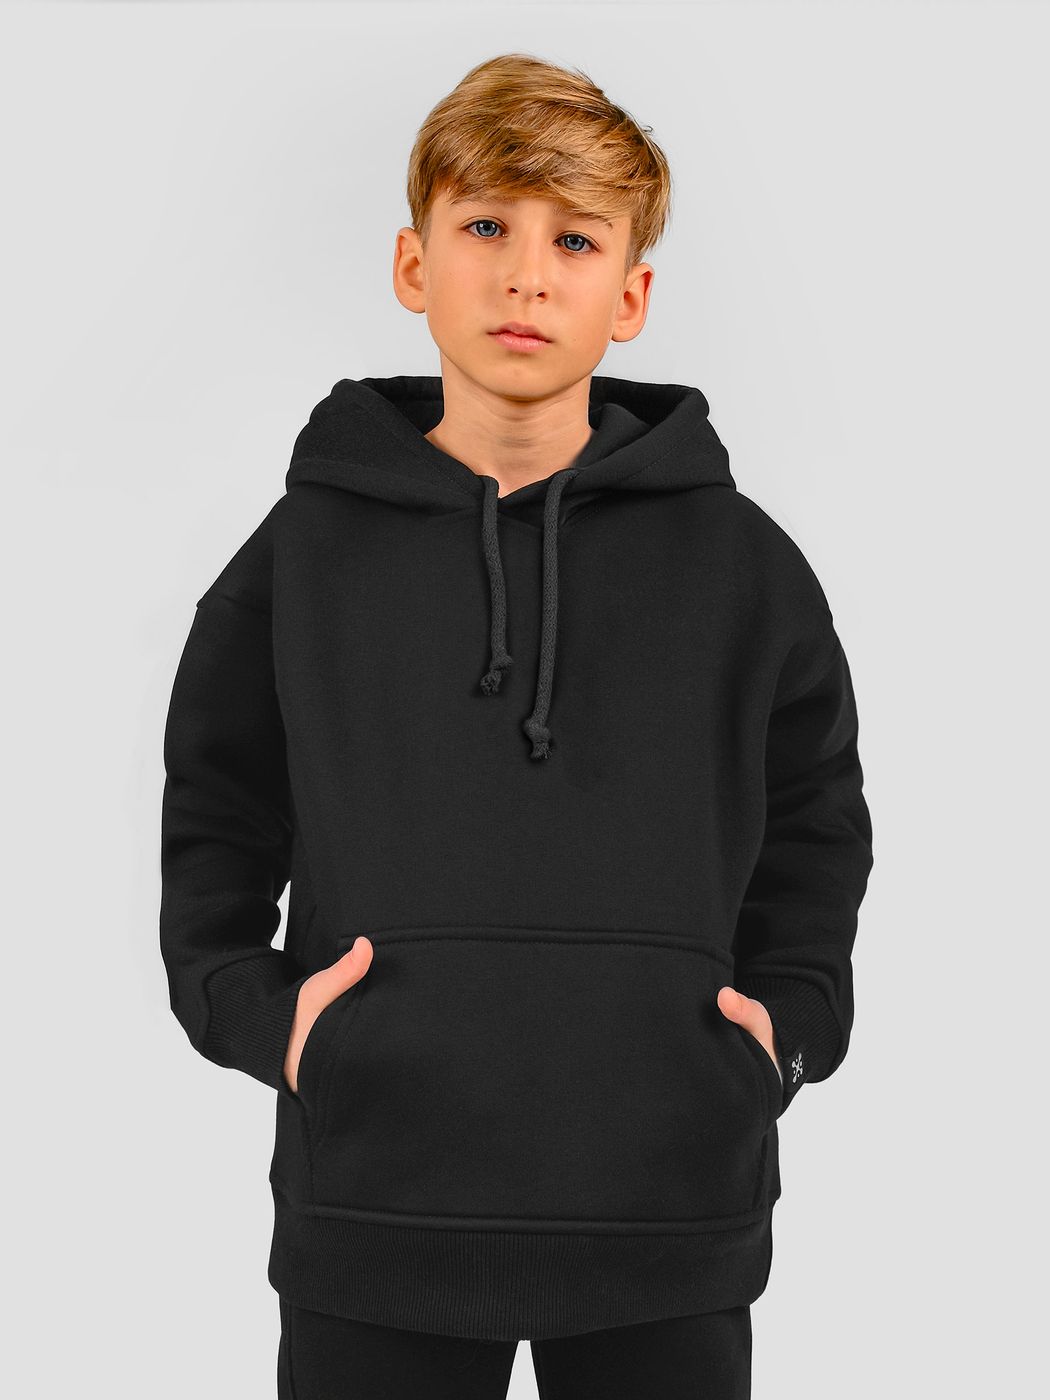 Kid's suit hoodie and pants black, Black, 3XS (86-92 cm), 92